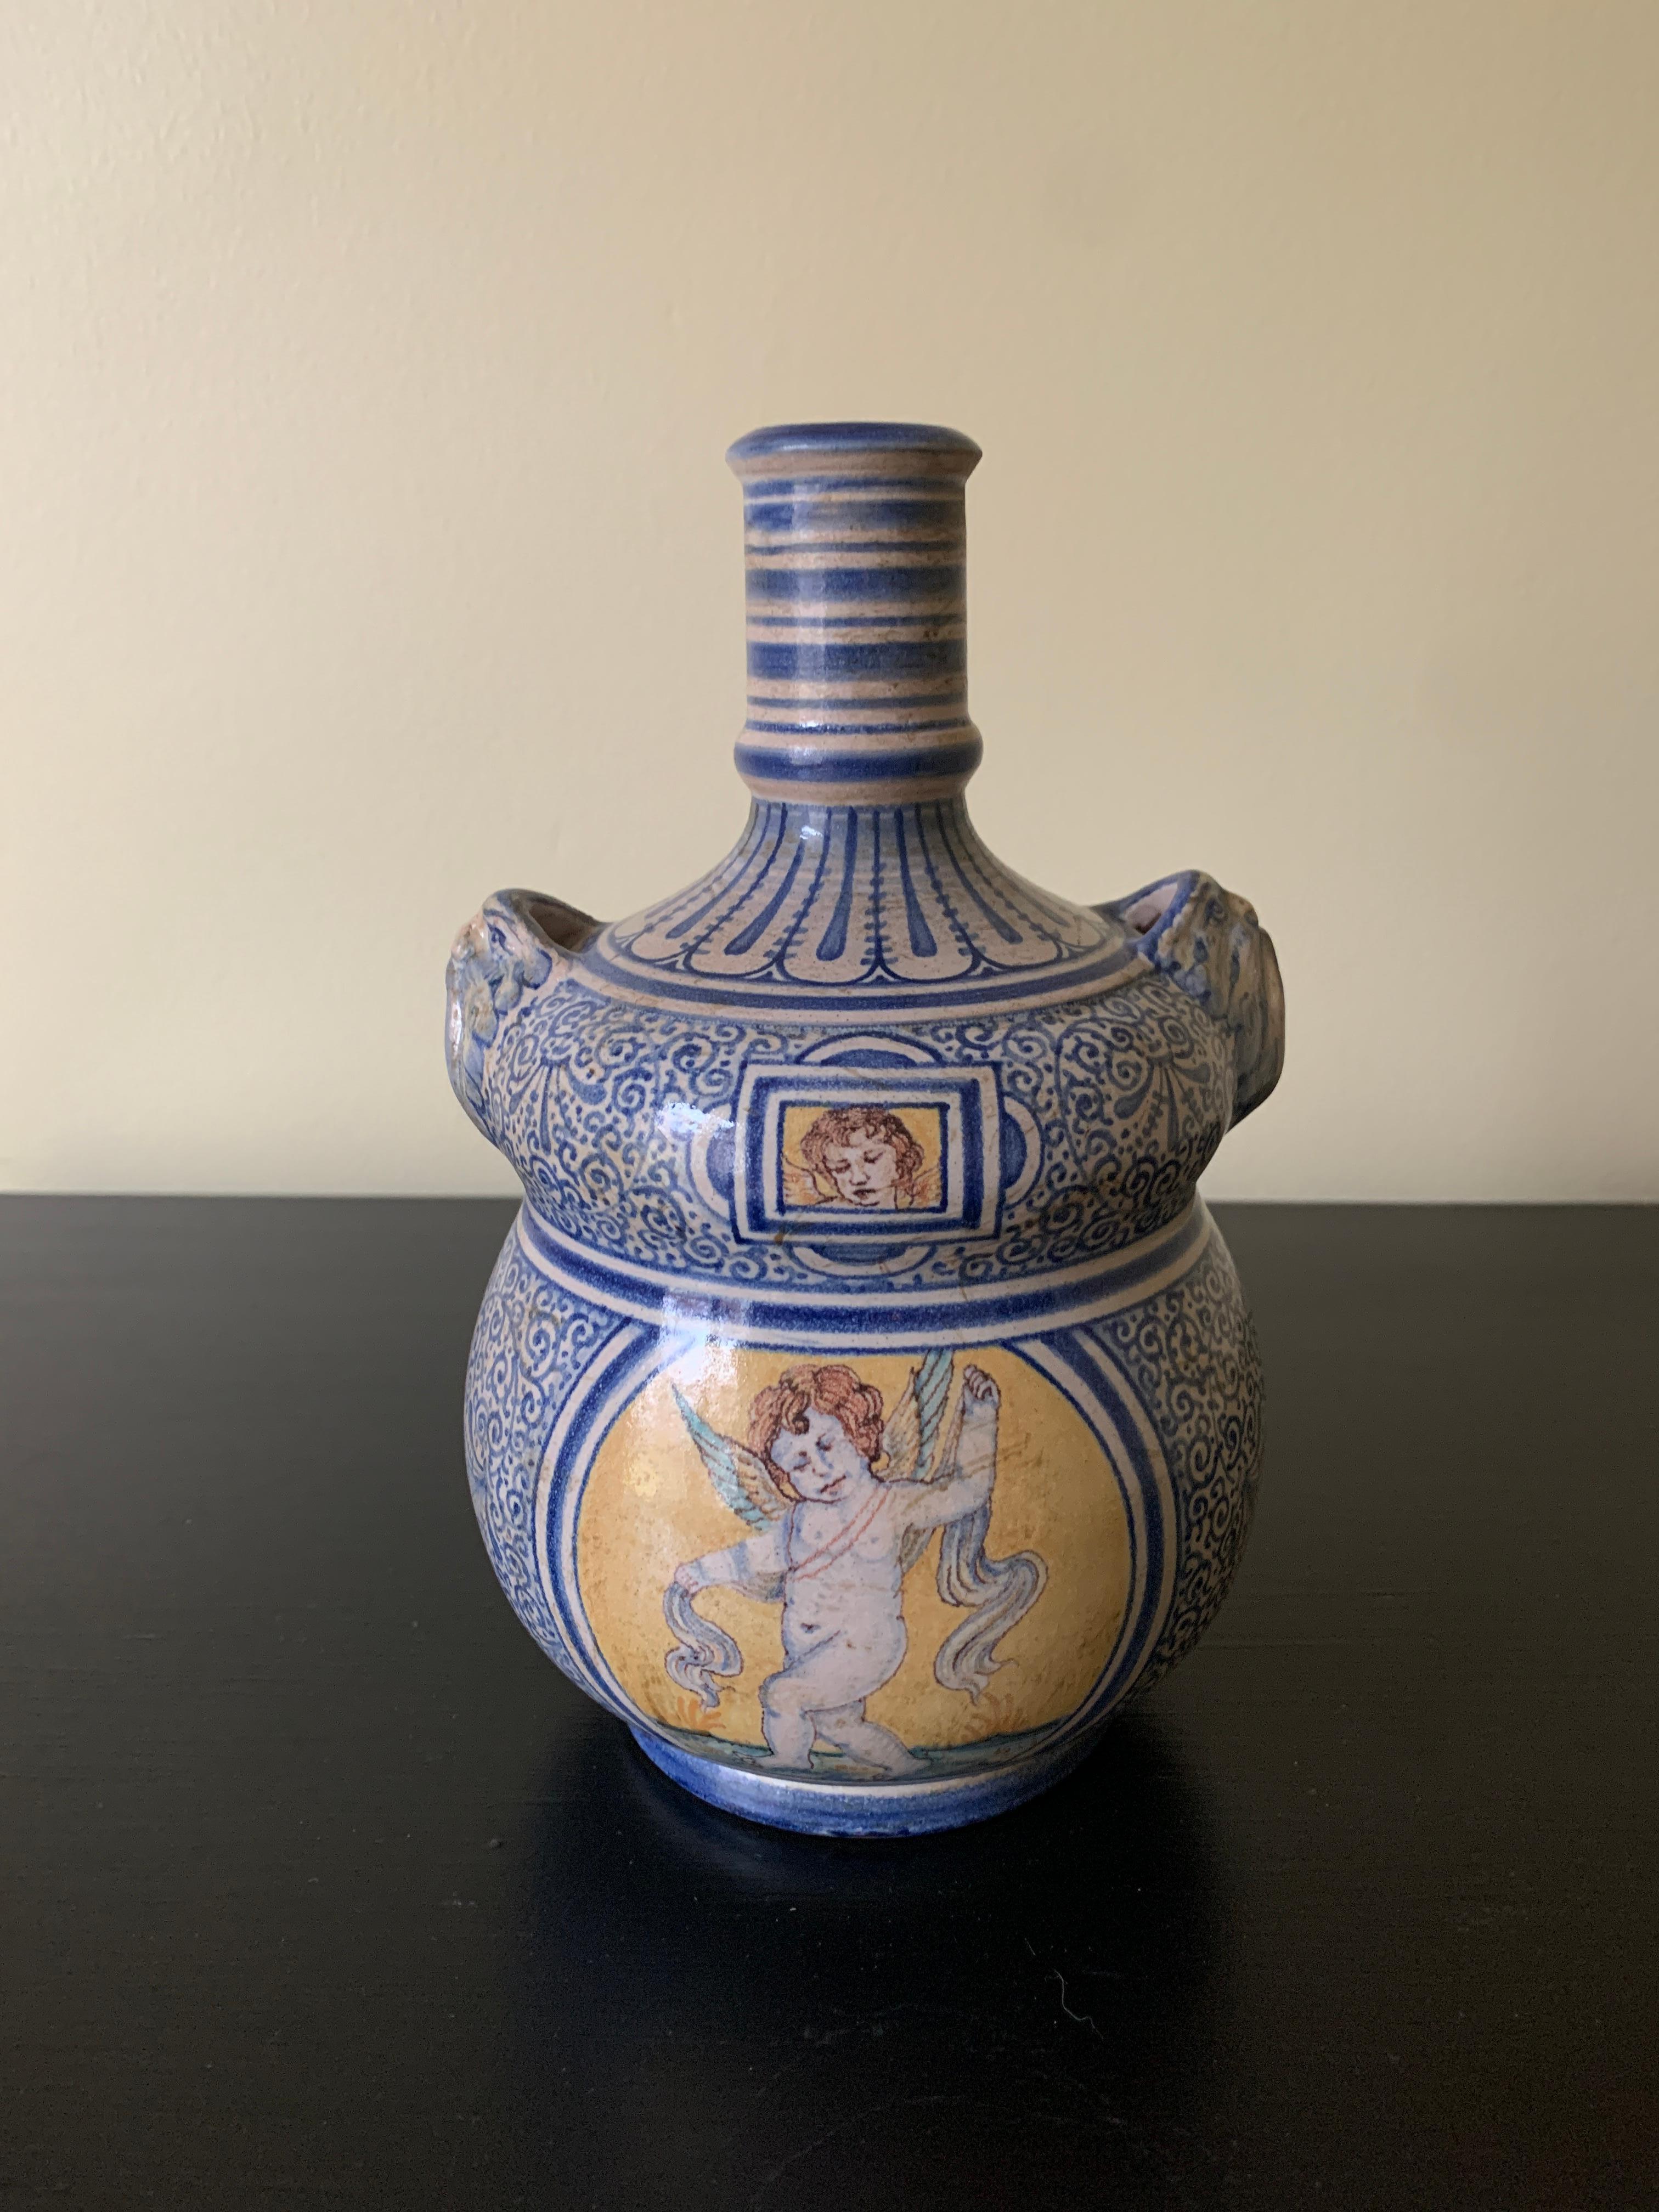 Magnifique cruche ou vase en faïence peint à la main en bleu, blanc et jaune, avec des poignées représentant des putti classiques. 

Par Deruta

Italie, Fin du 20e siècle

Dimensions : 5 